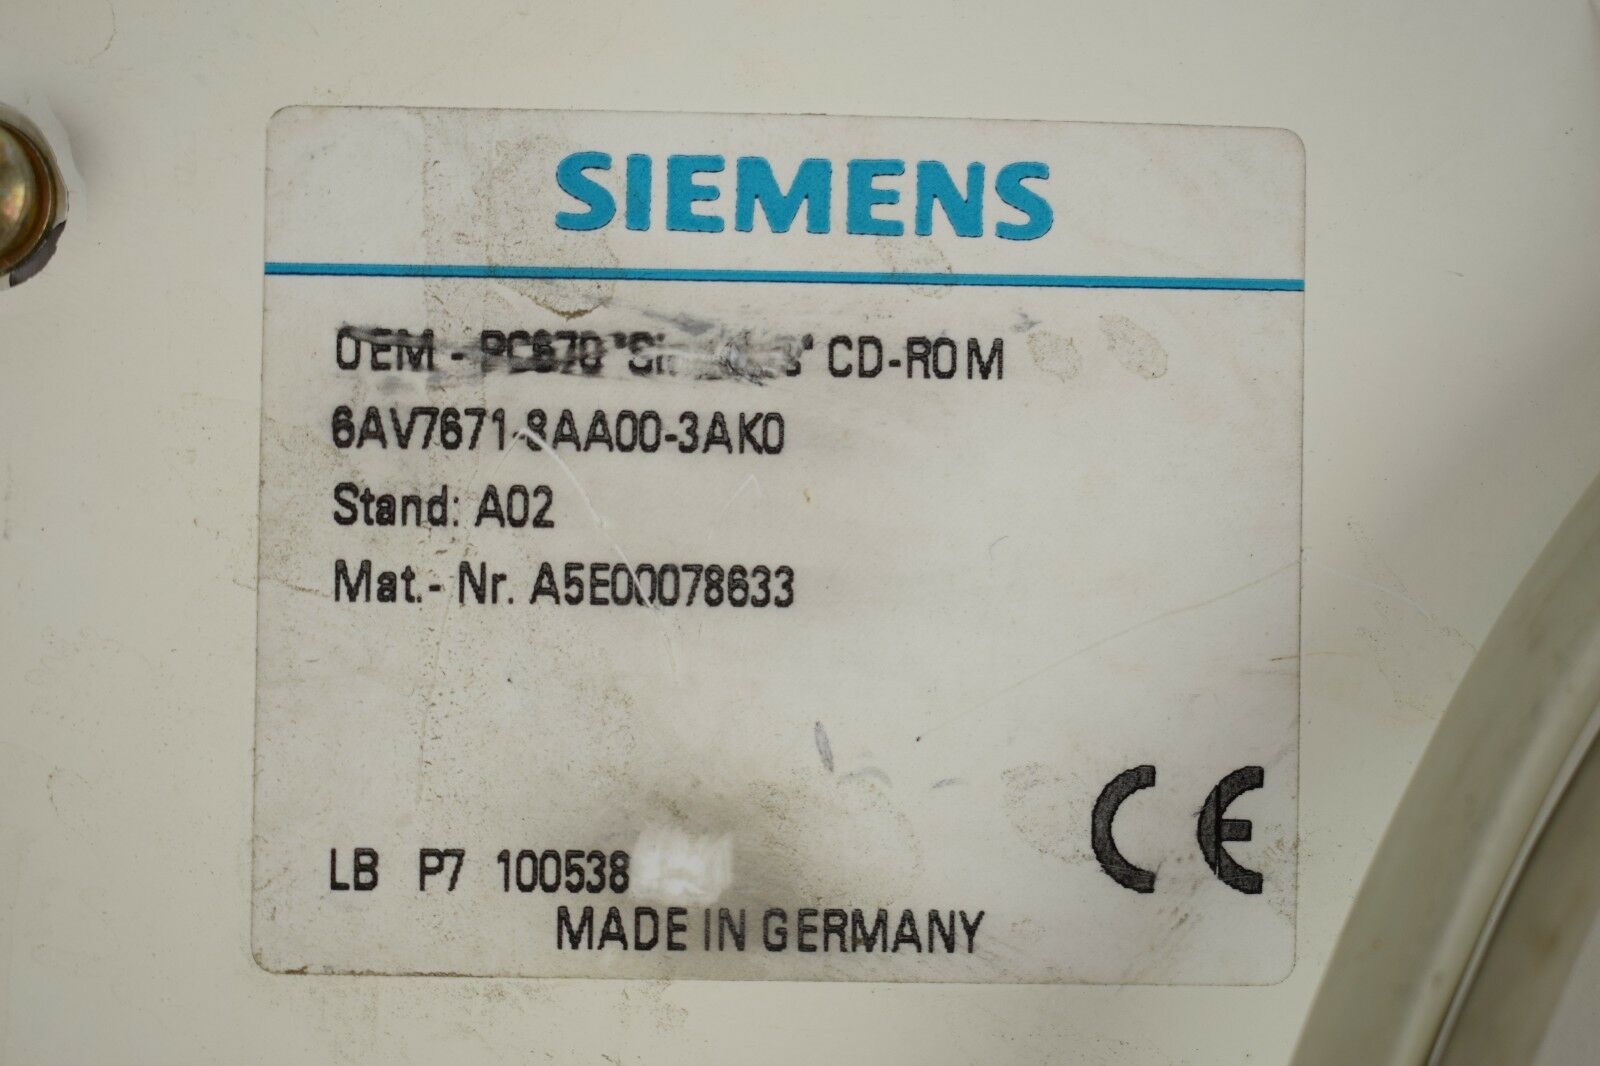 Siemens OEM-PC670 6AV7 671-8AA00-3AK0 ( 6AV7671-8AA00-3AK0 ) A02